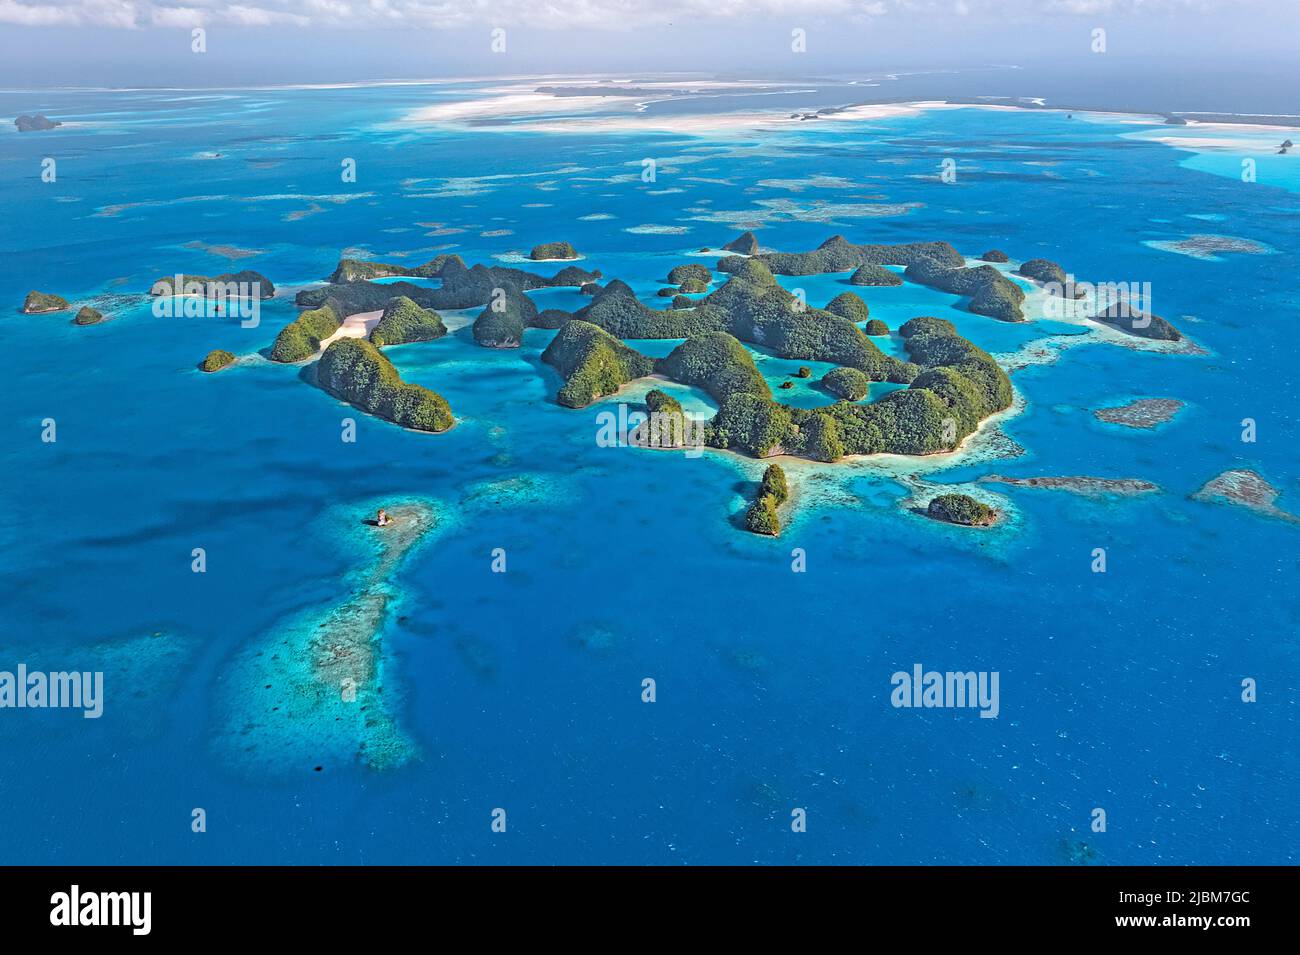 Vista aérea, islas y arrecifes de coral de Palau, Micronesia, Océano Pacífico, Asia Foto de stock